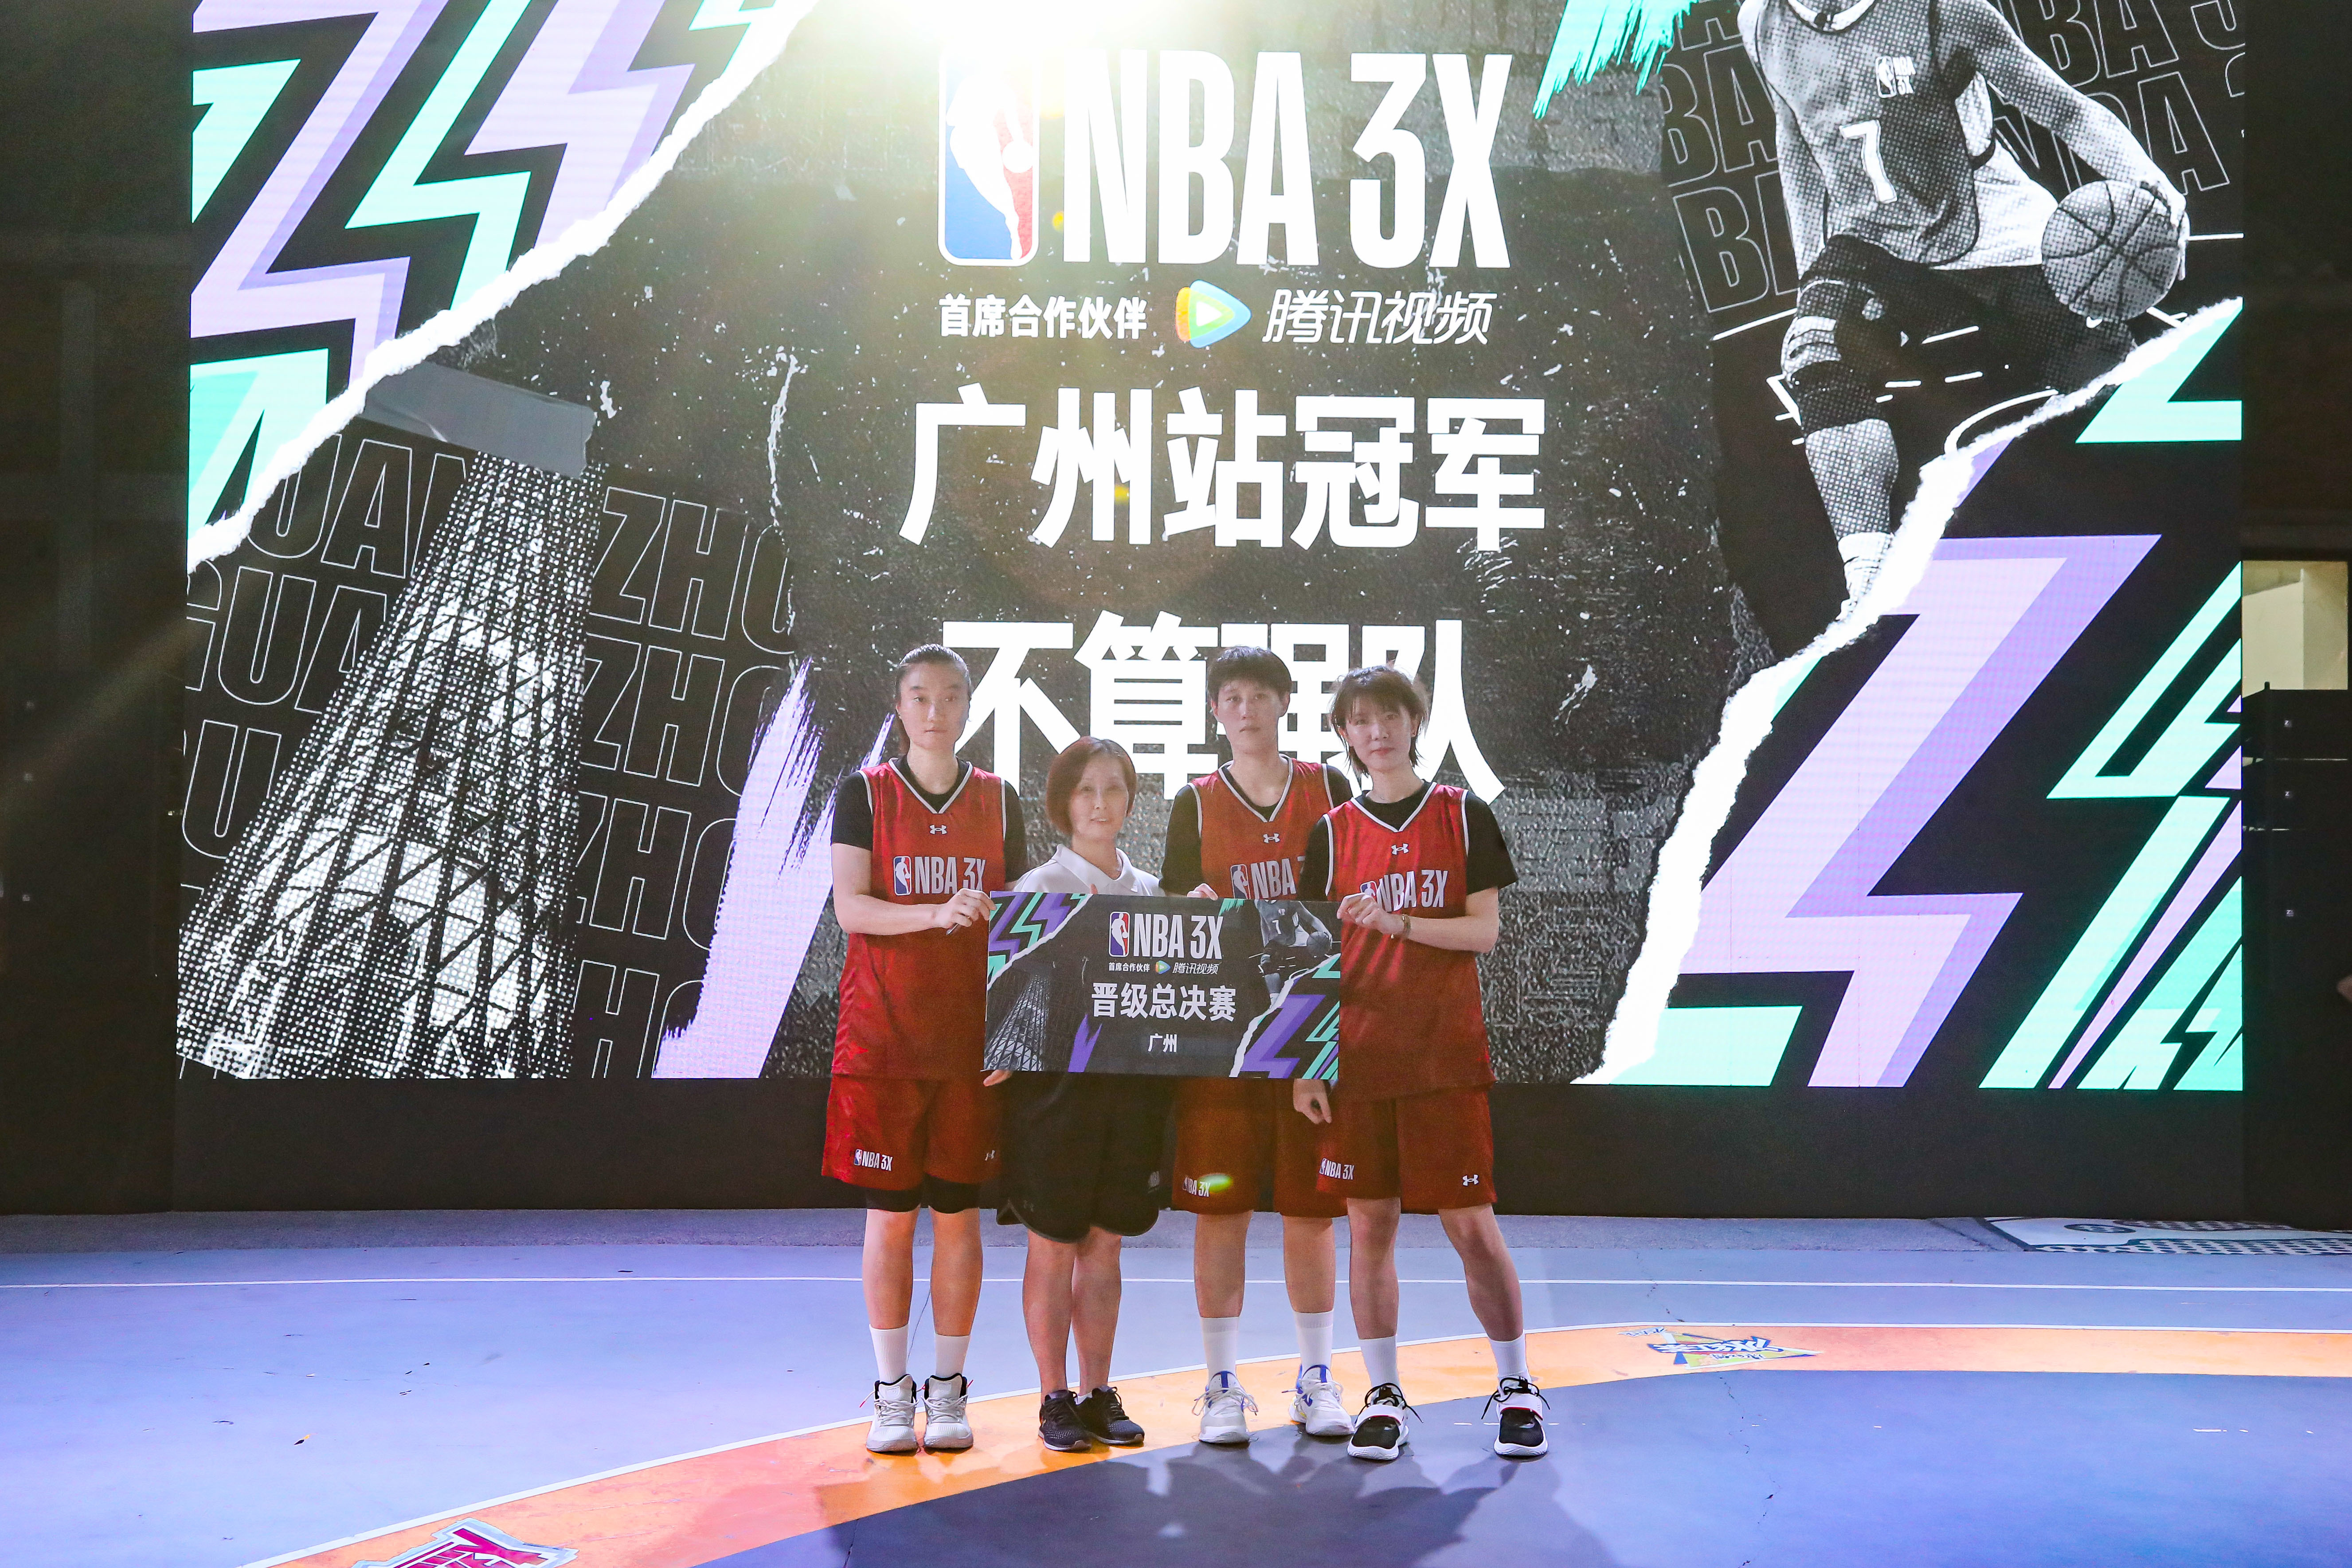 NBA 3X广州半决赛落下帷幕，常州凯达闯进总决赛